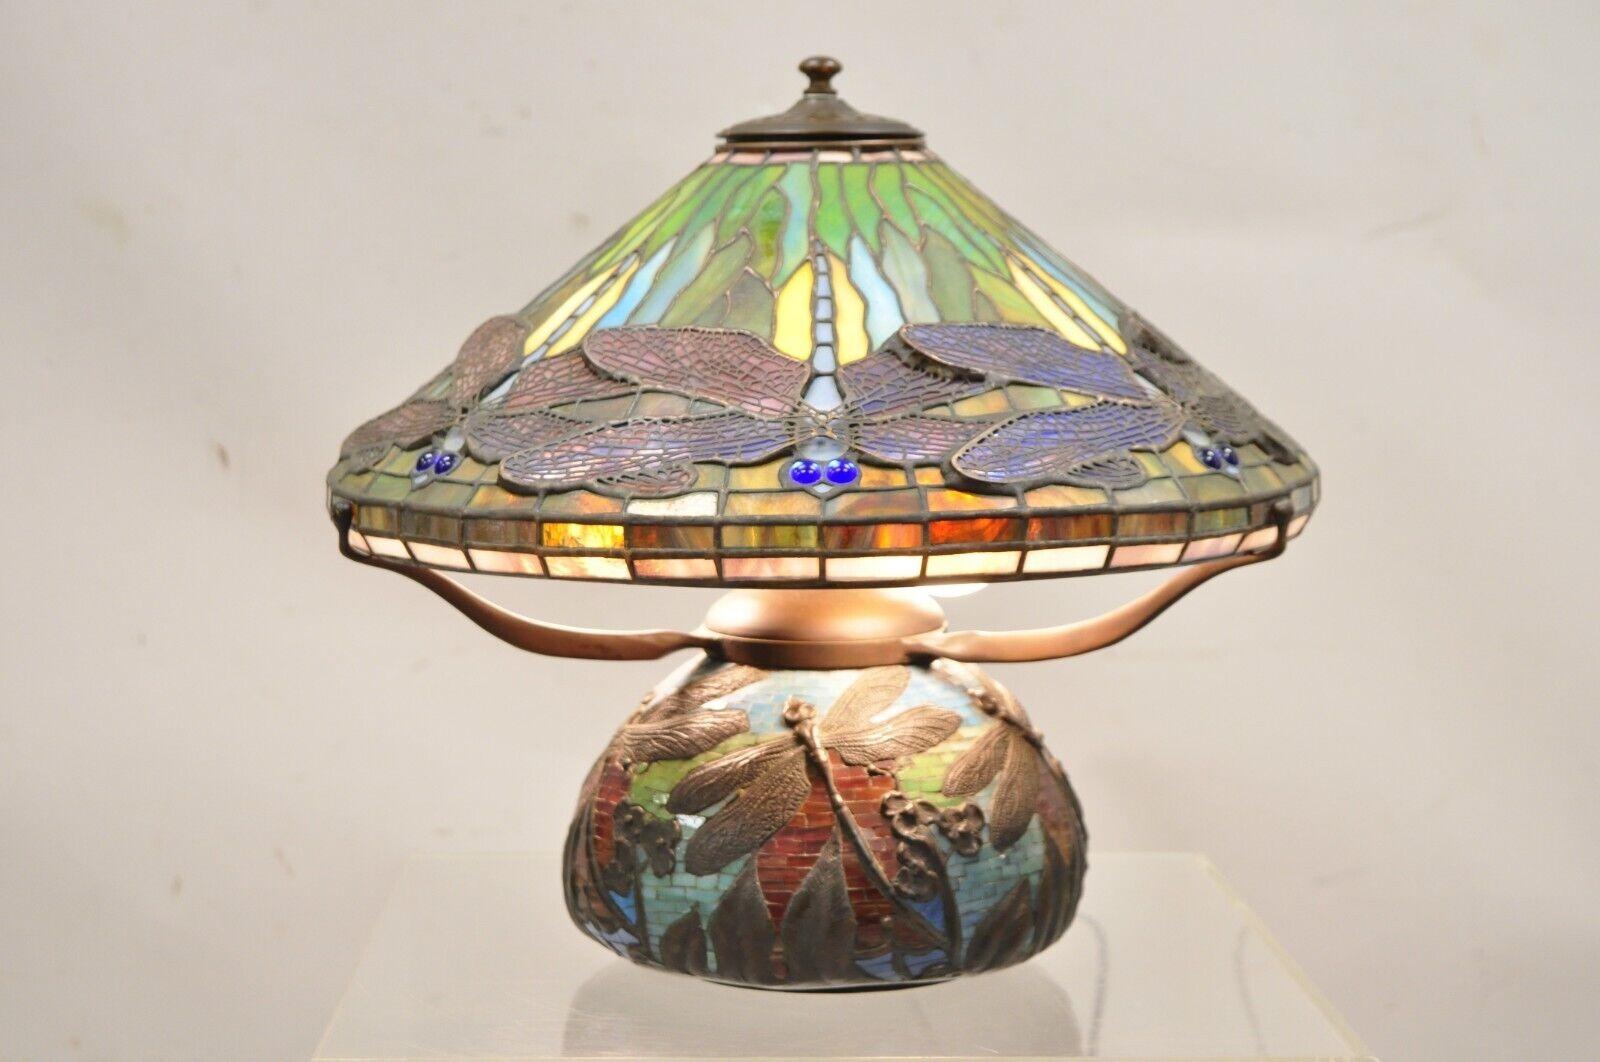 Lampe de table de style Tiffany Vintage de haute qualité en bronze et vitrail au plomb, libellule à l'oeil bleu. Circa Mid to Late 20th Century. Dimensions : 14